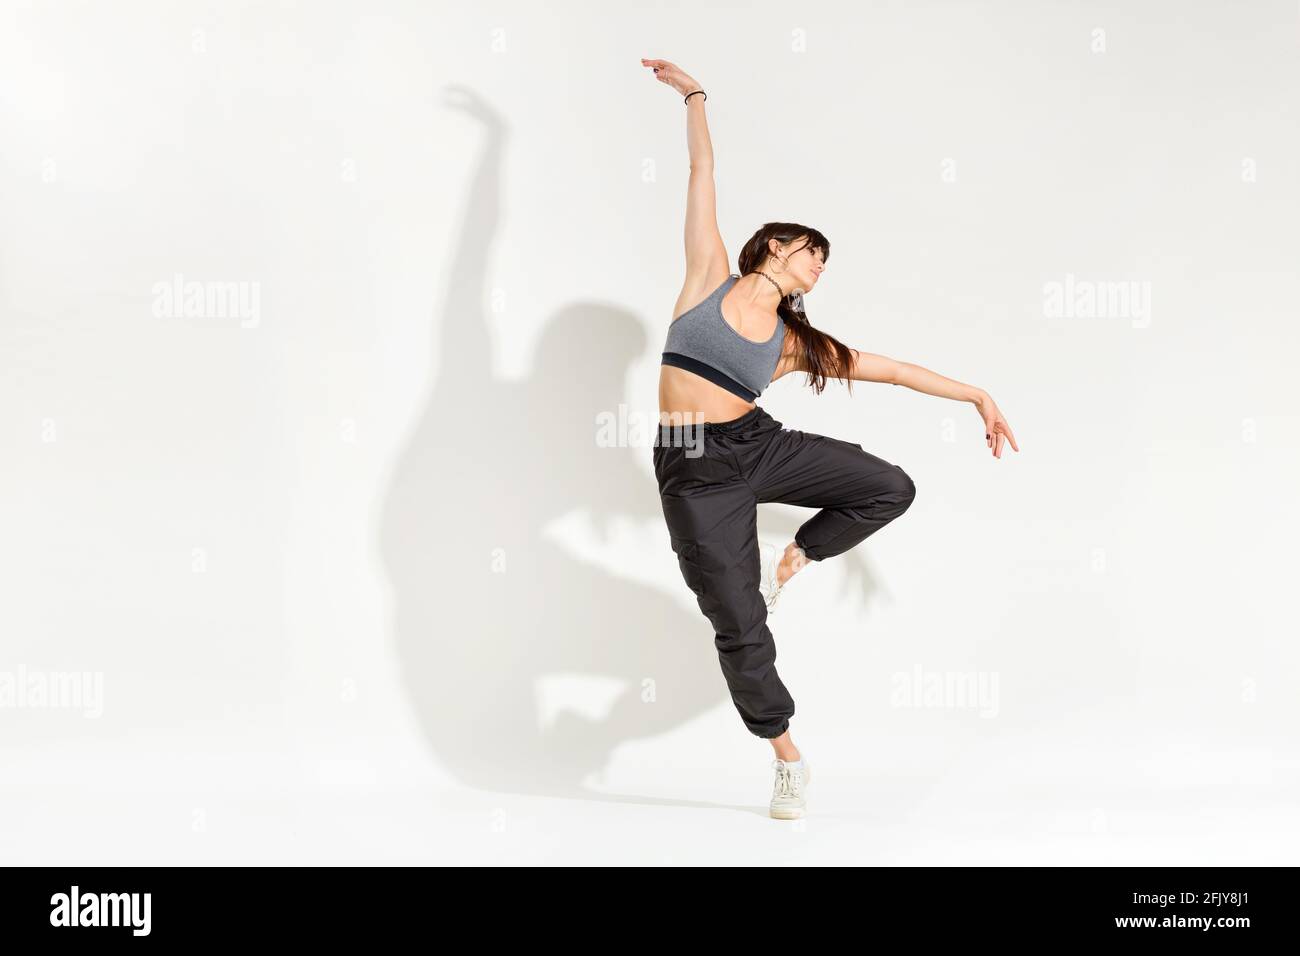 Danseuse élégante jeune danseuse dans une tenue hip hop qui se présente une posture de danse classique avec des bras étirés en équilibre sur un seul jambe avec ombre artistique sur un Banque D'Images